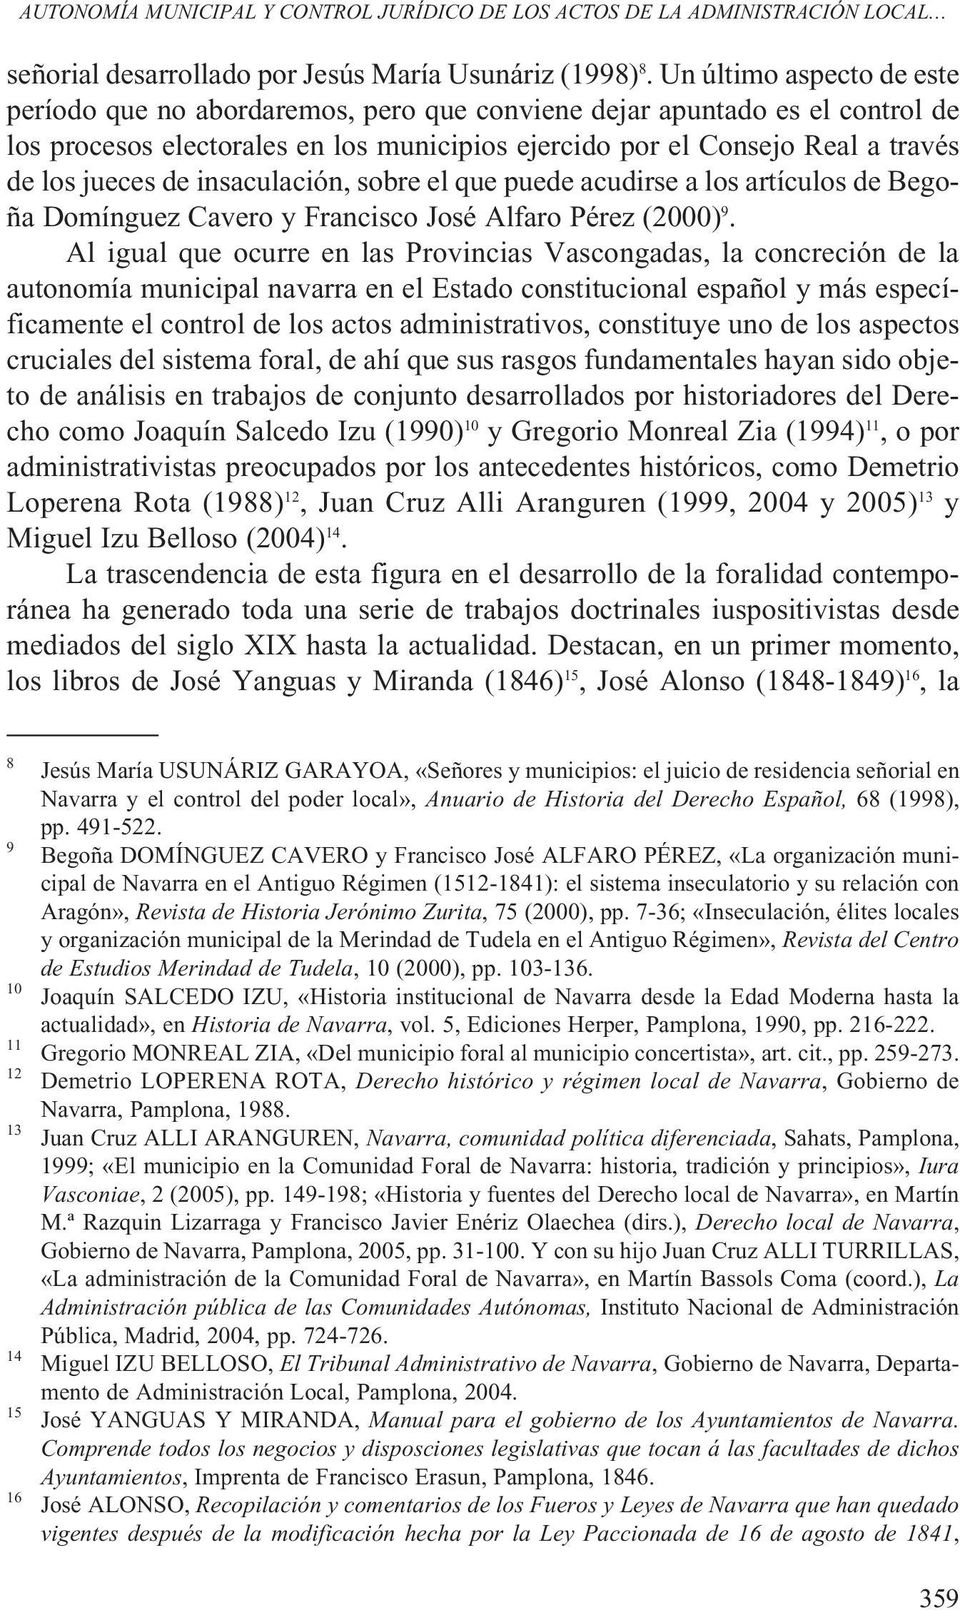 de insaculación, sobre el que puede acudirse a los artículos de Begoña Domínguez Cavero y Francisco José Alfaro Pérez (2000) 9.